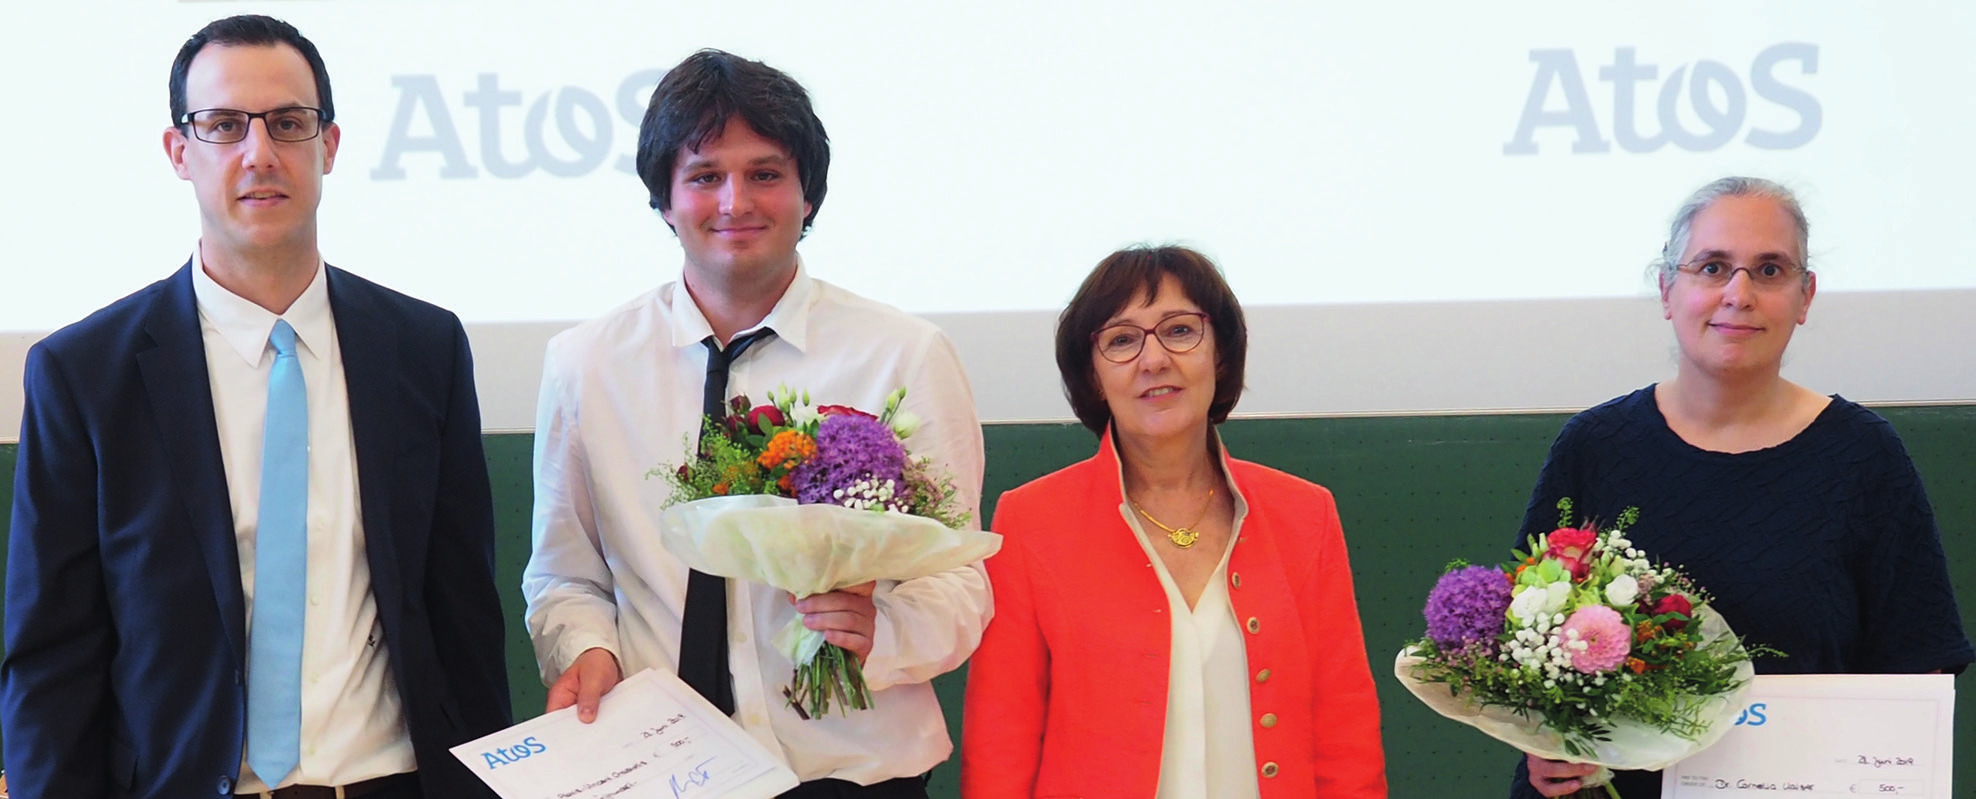 Alexis-Vincent Chasiotis und Dr. Cornelia Kaiser bekamen auf der diesjährigen Absolventenfeier den Weierstraß-Preis für ausgezeichnete Lehre verliehen.  